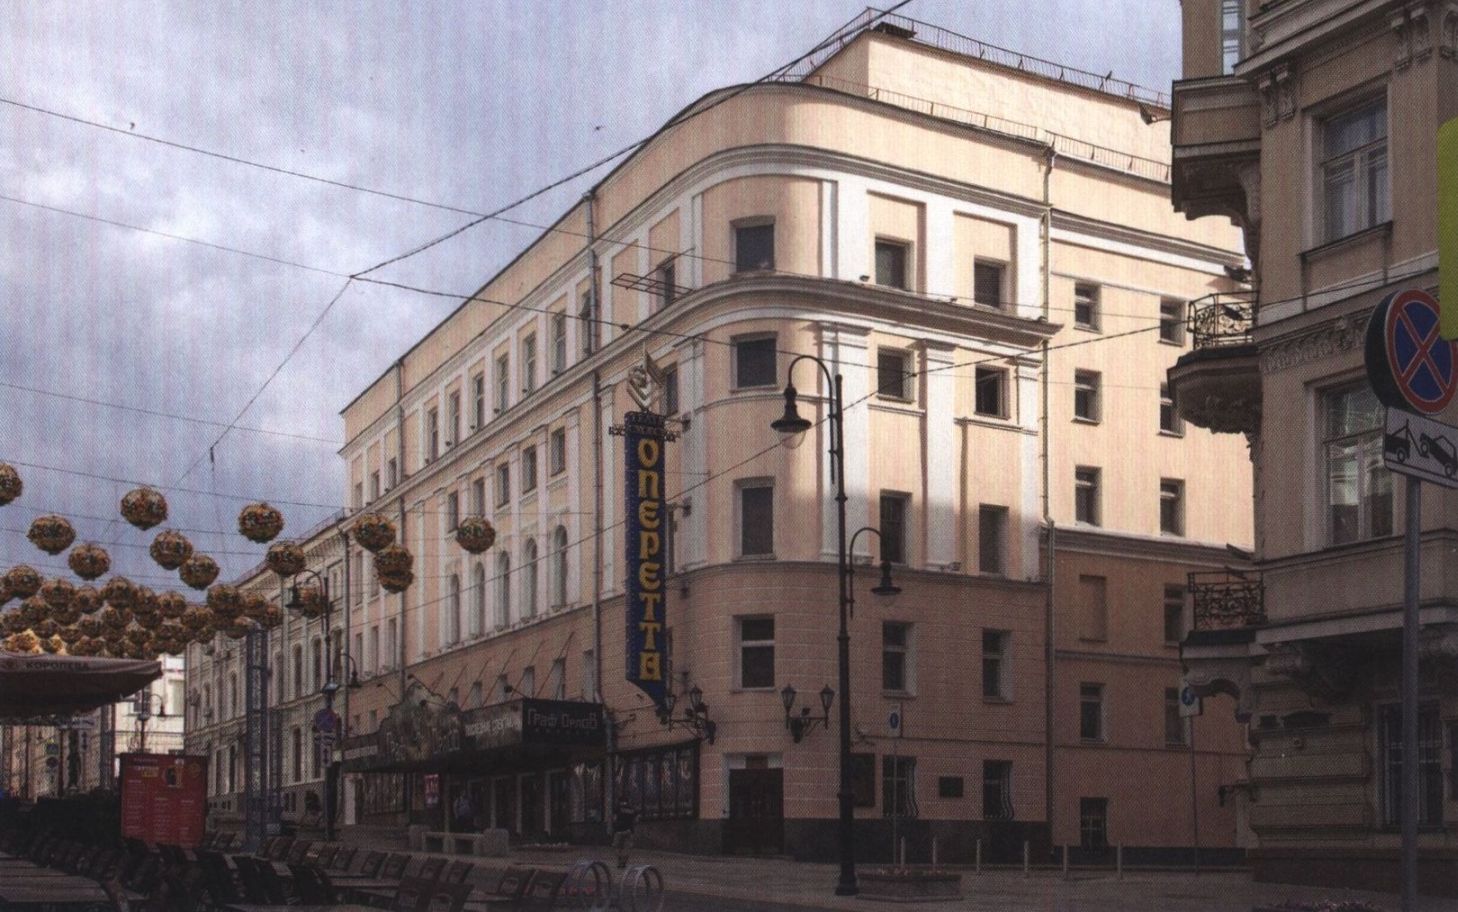 Улица Большая Дмитровка, дом 6. 2016 г. После революции театр был национализирован, но в 1922 году С.И. Зимин вновь возглавил театр. В части здания, выходящей на Кузнецкий Мост, он жил до самой смерти в 1942 году